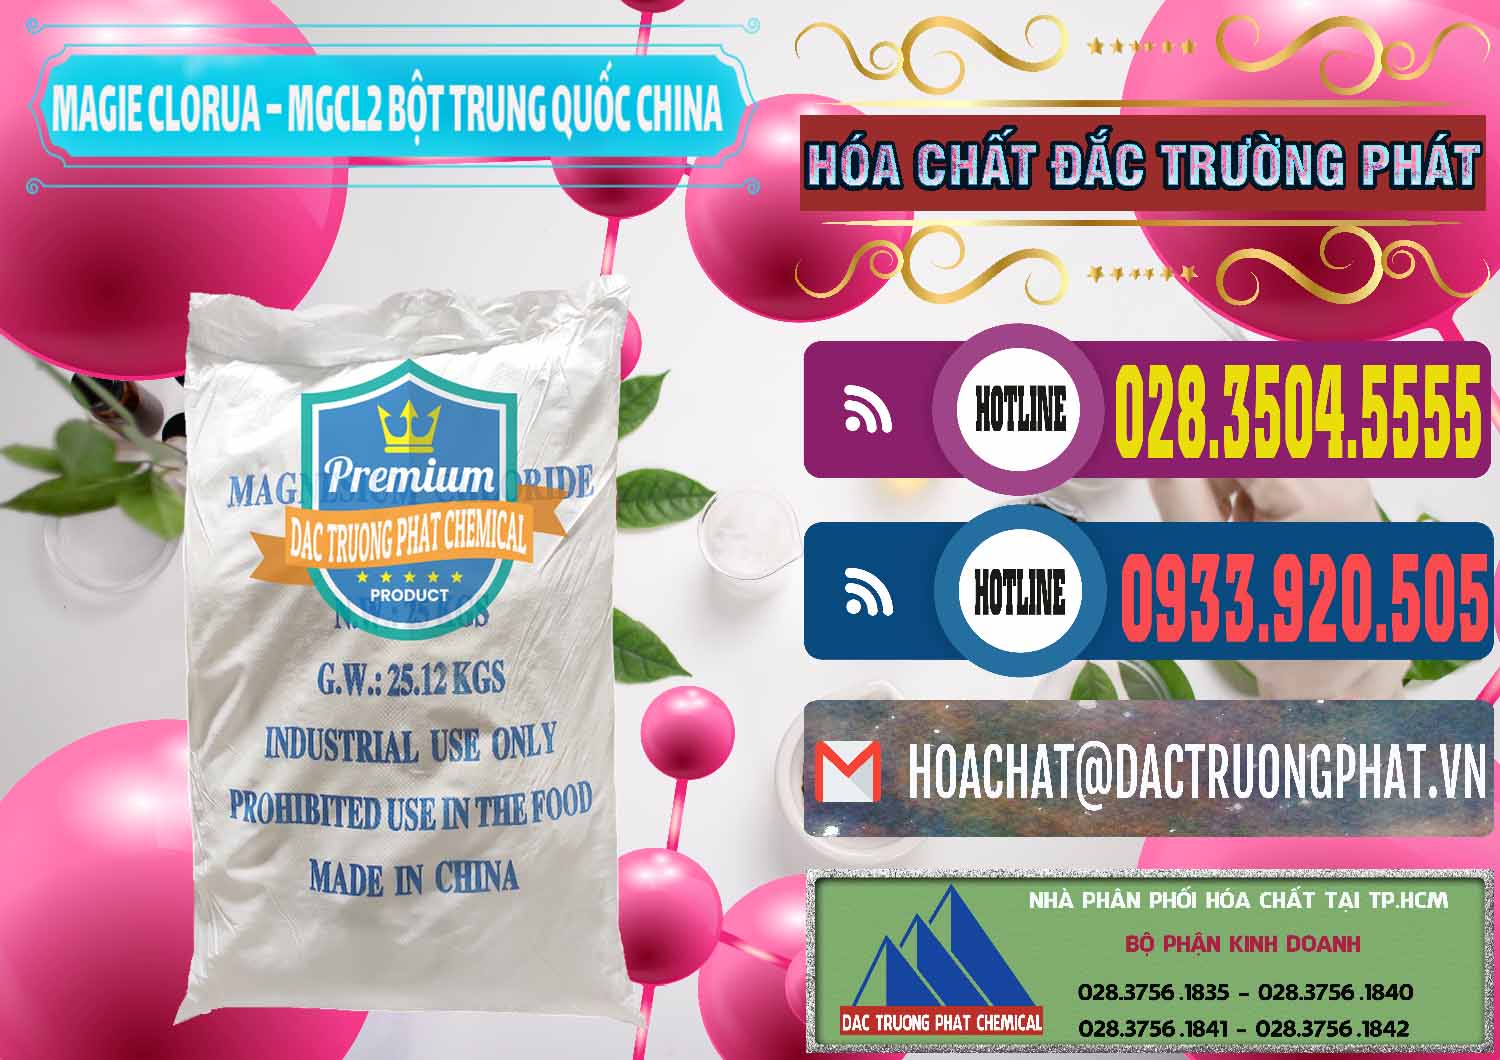 Đơn vị chuyên bán - cung ứng Magie Clorua – MGCL2 96% Dạng Bột Bao Chữ Xanh Trung Quốc China - 0207 - Cty chuyên cung cấp _ bán hóa chất tại TP.HCM - muabanhoachat.com.vn